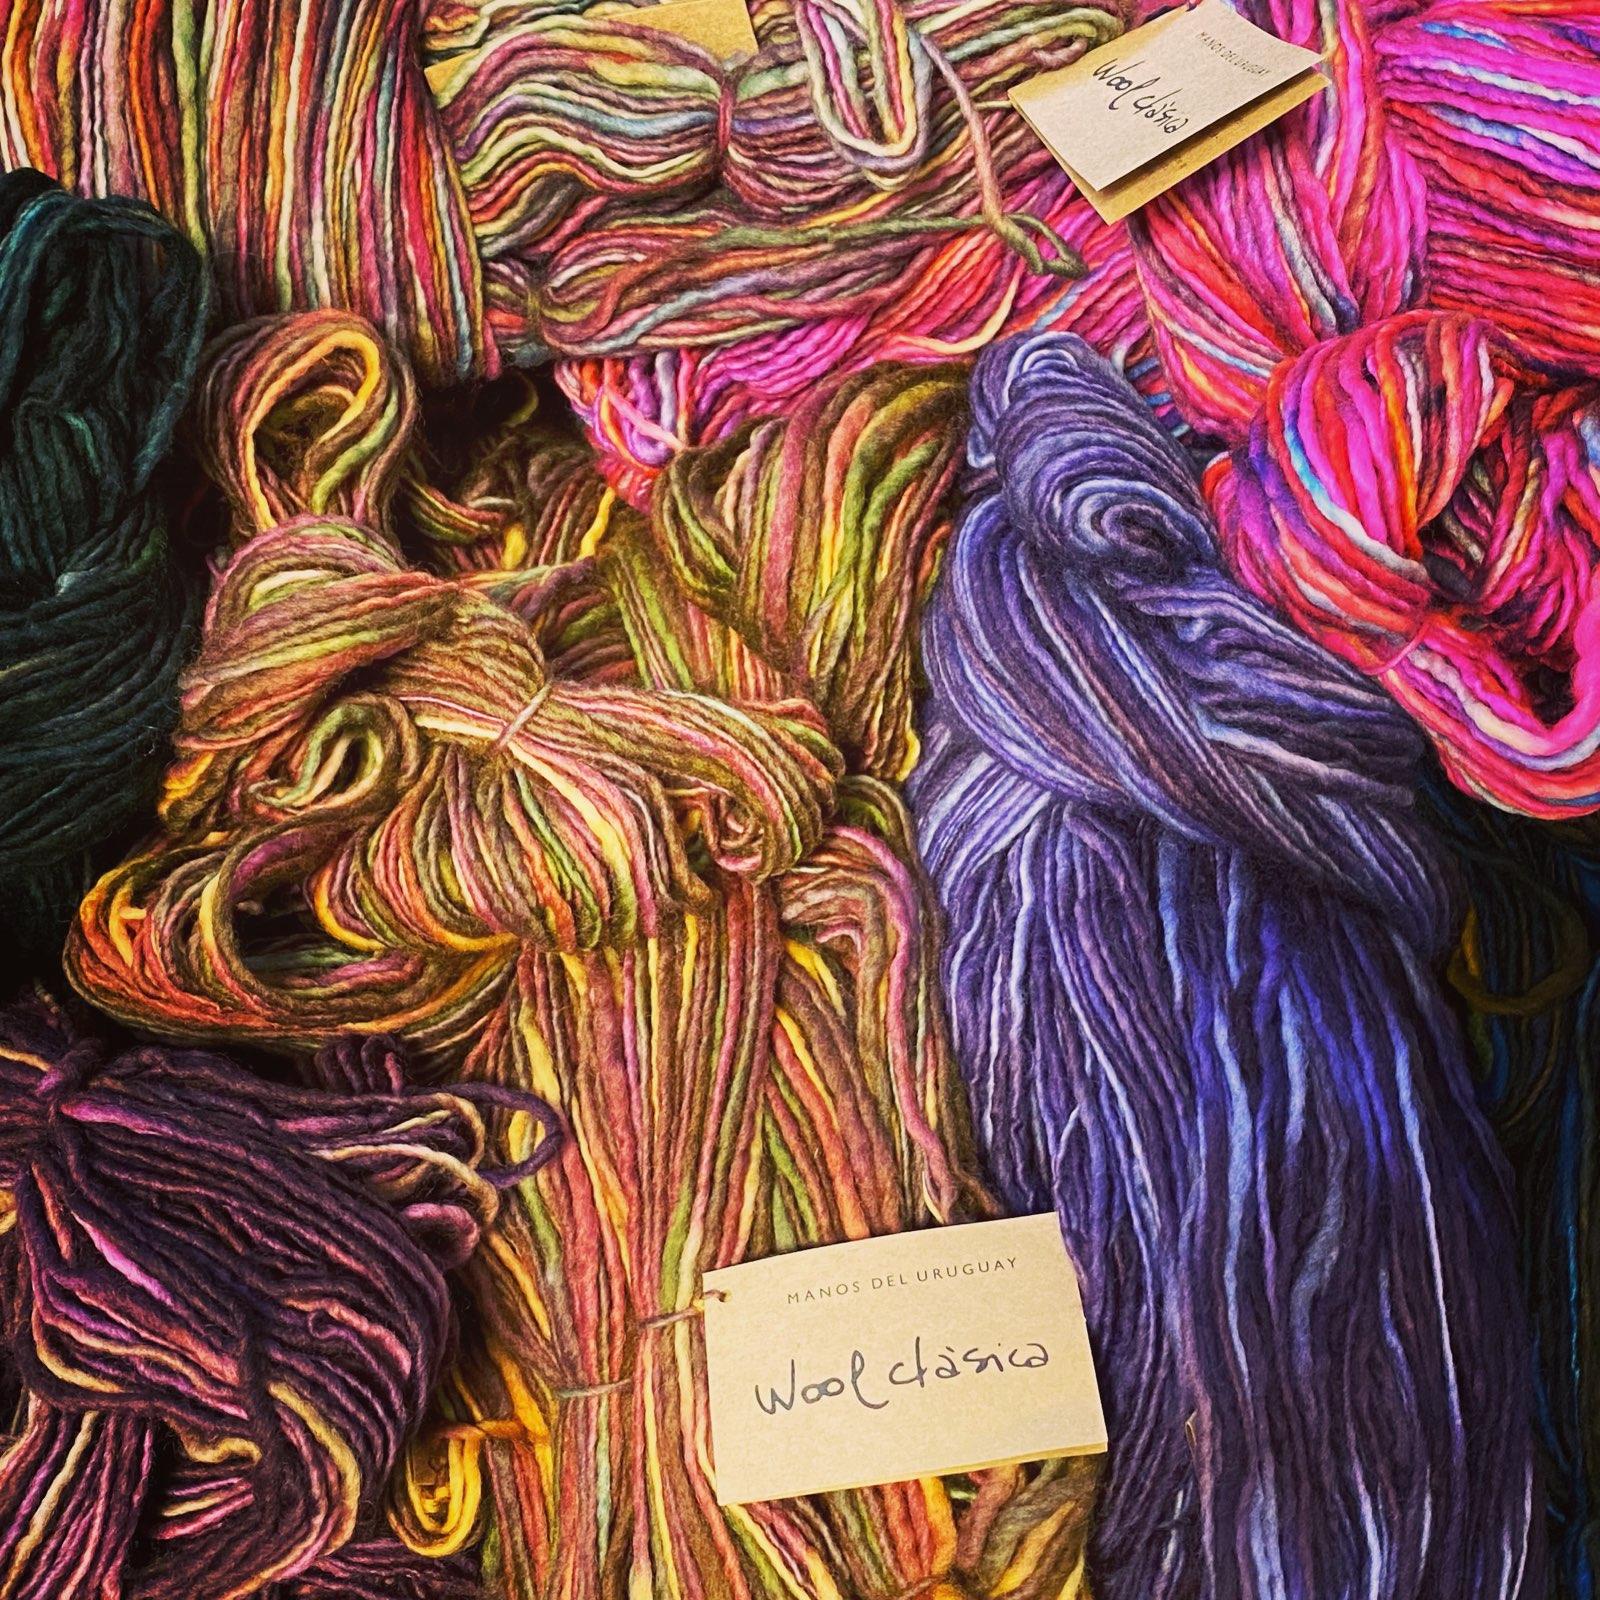 Manos del Uruguay 100% Wool Clasica